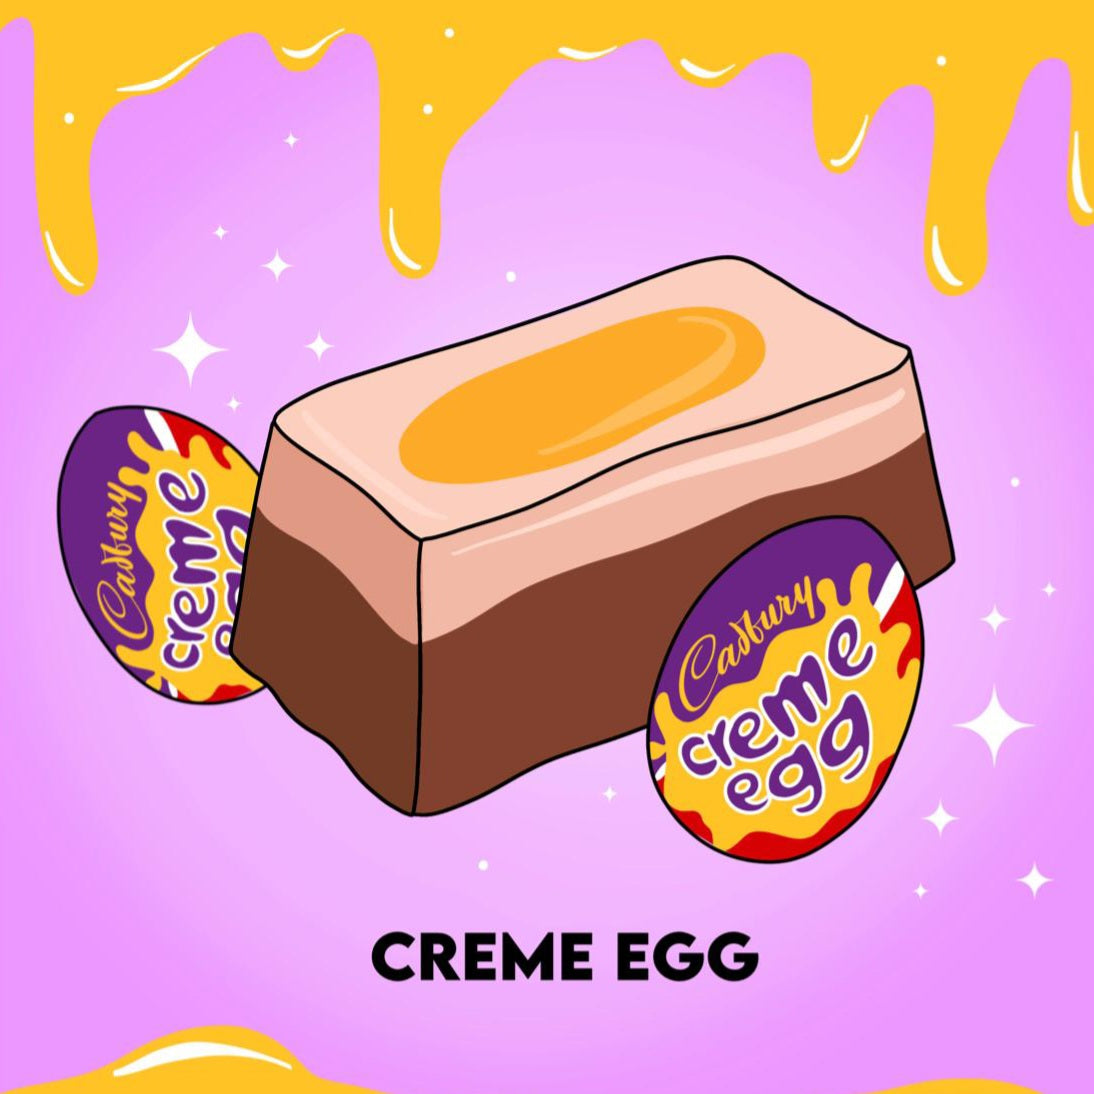 Creme egg